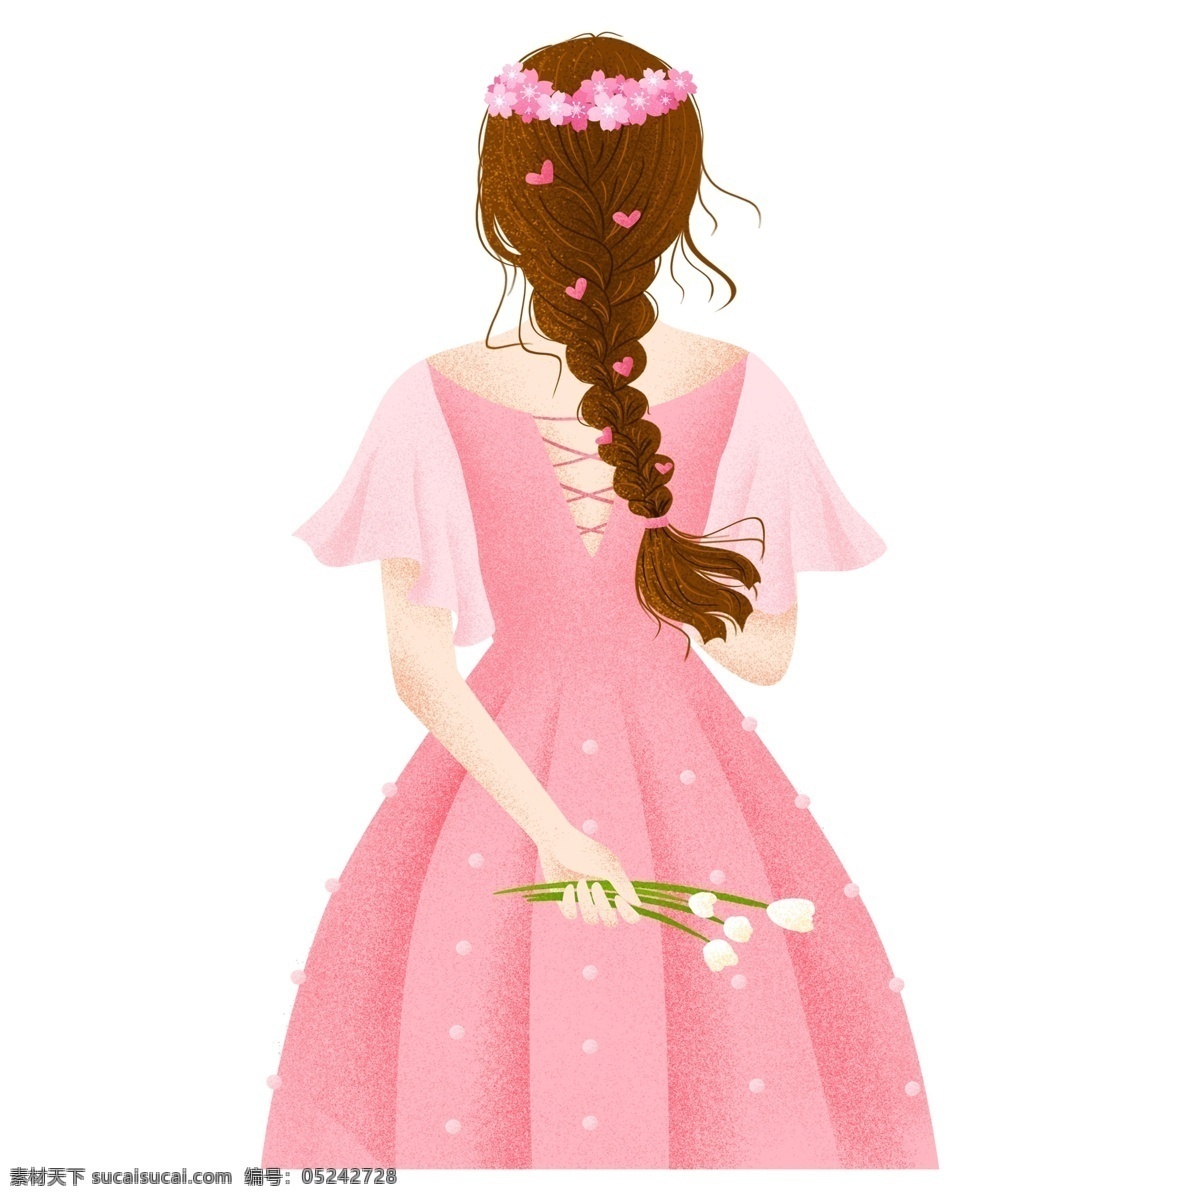 粉色 背影 女孩 人物 元素 人物插画 精致人物 手绘元素 装饰 女孩背影